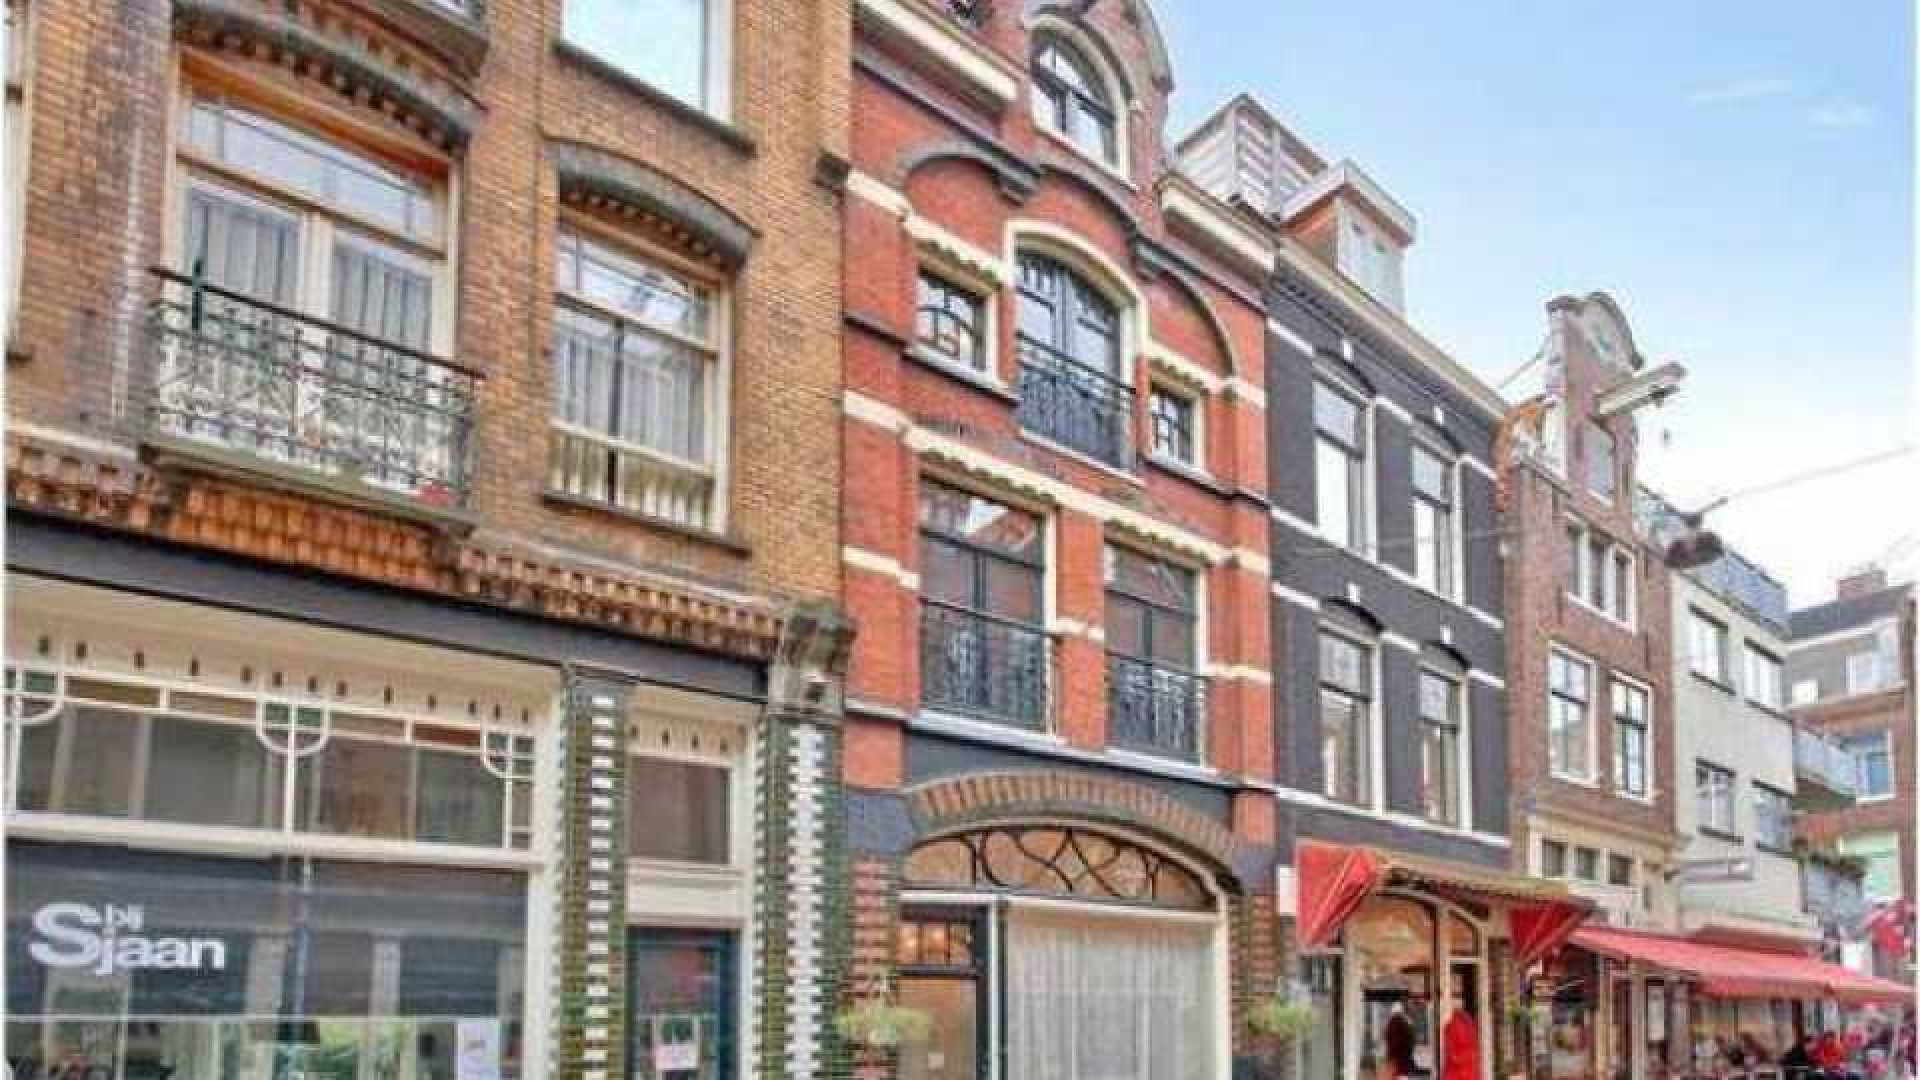 Dit is het knusse Amsterdamse Jordanese huis van wijnboer en tv presentator Ilja Gort. Zie foto's 2